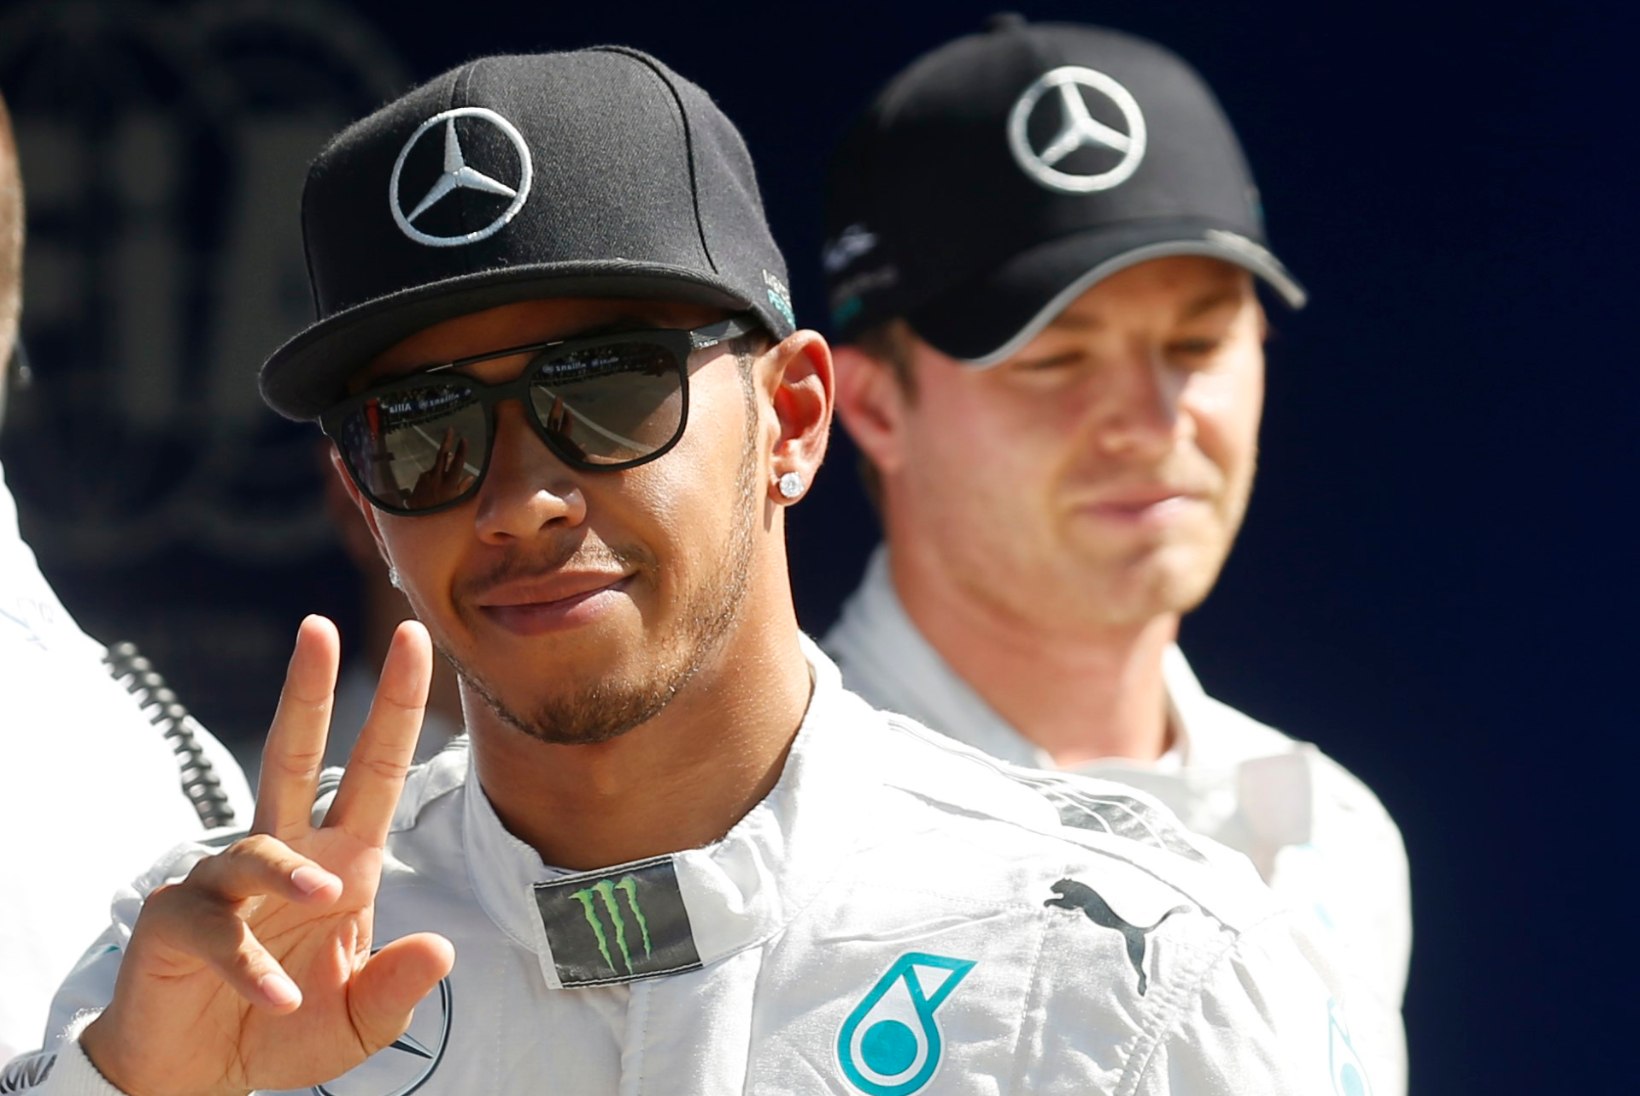 Rosbergi sõiduvead tõid Itaalia GP võidu Hamiltonile